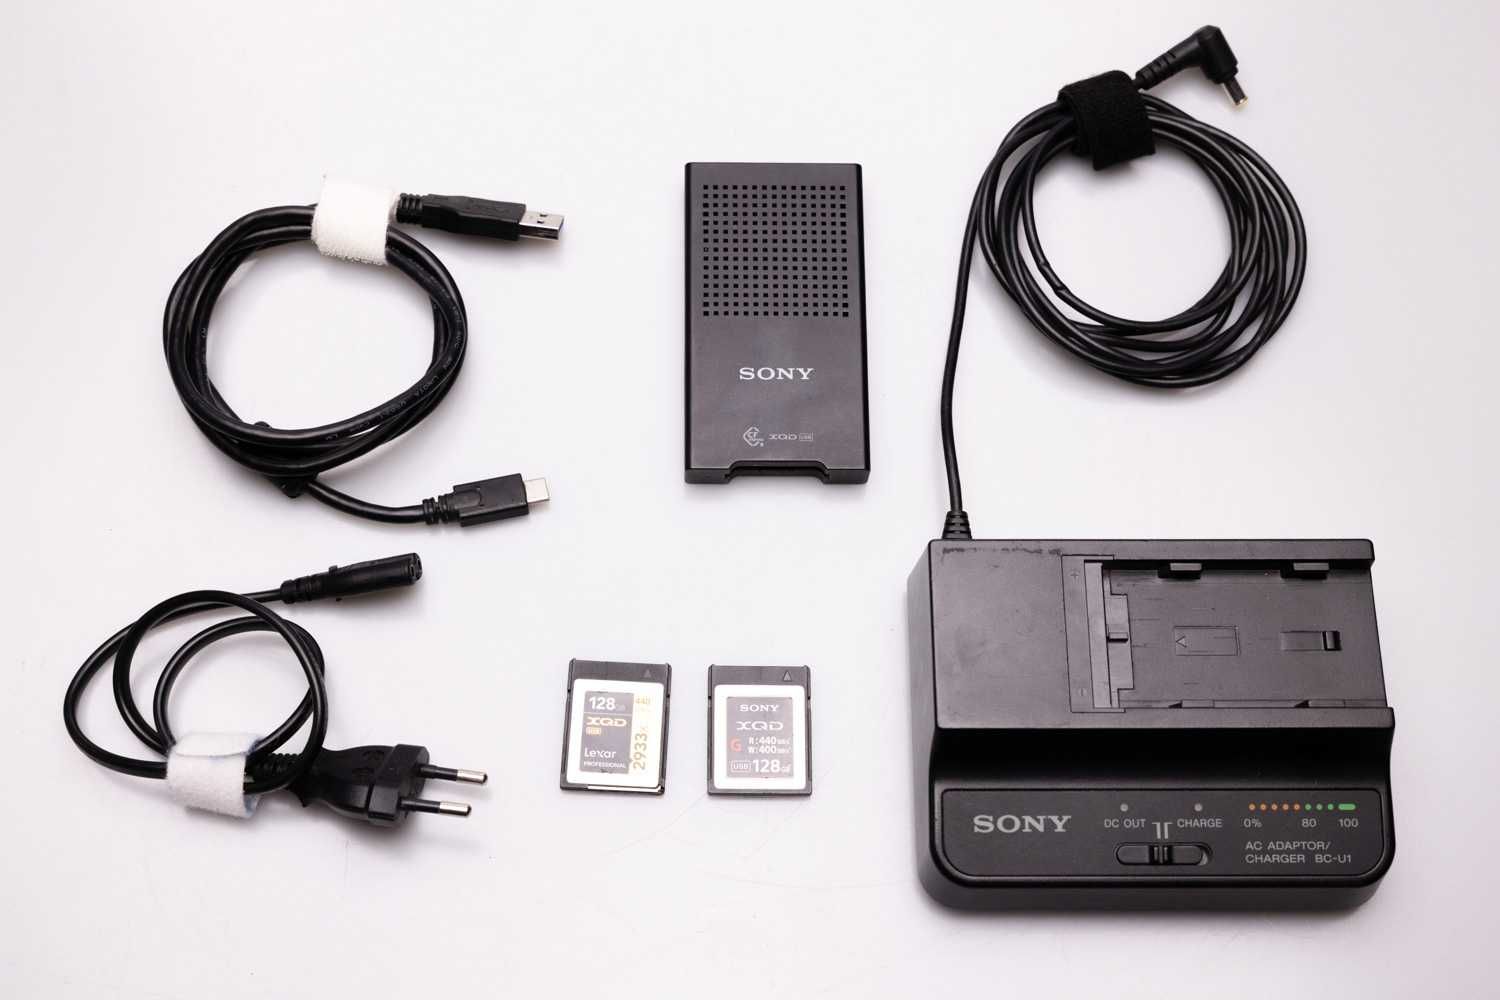 Kamera Sony Fs-7 mk 1  - zestaw -  faktura vat 23%